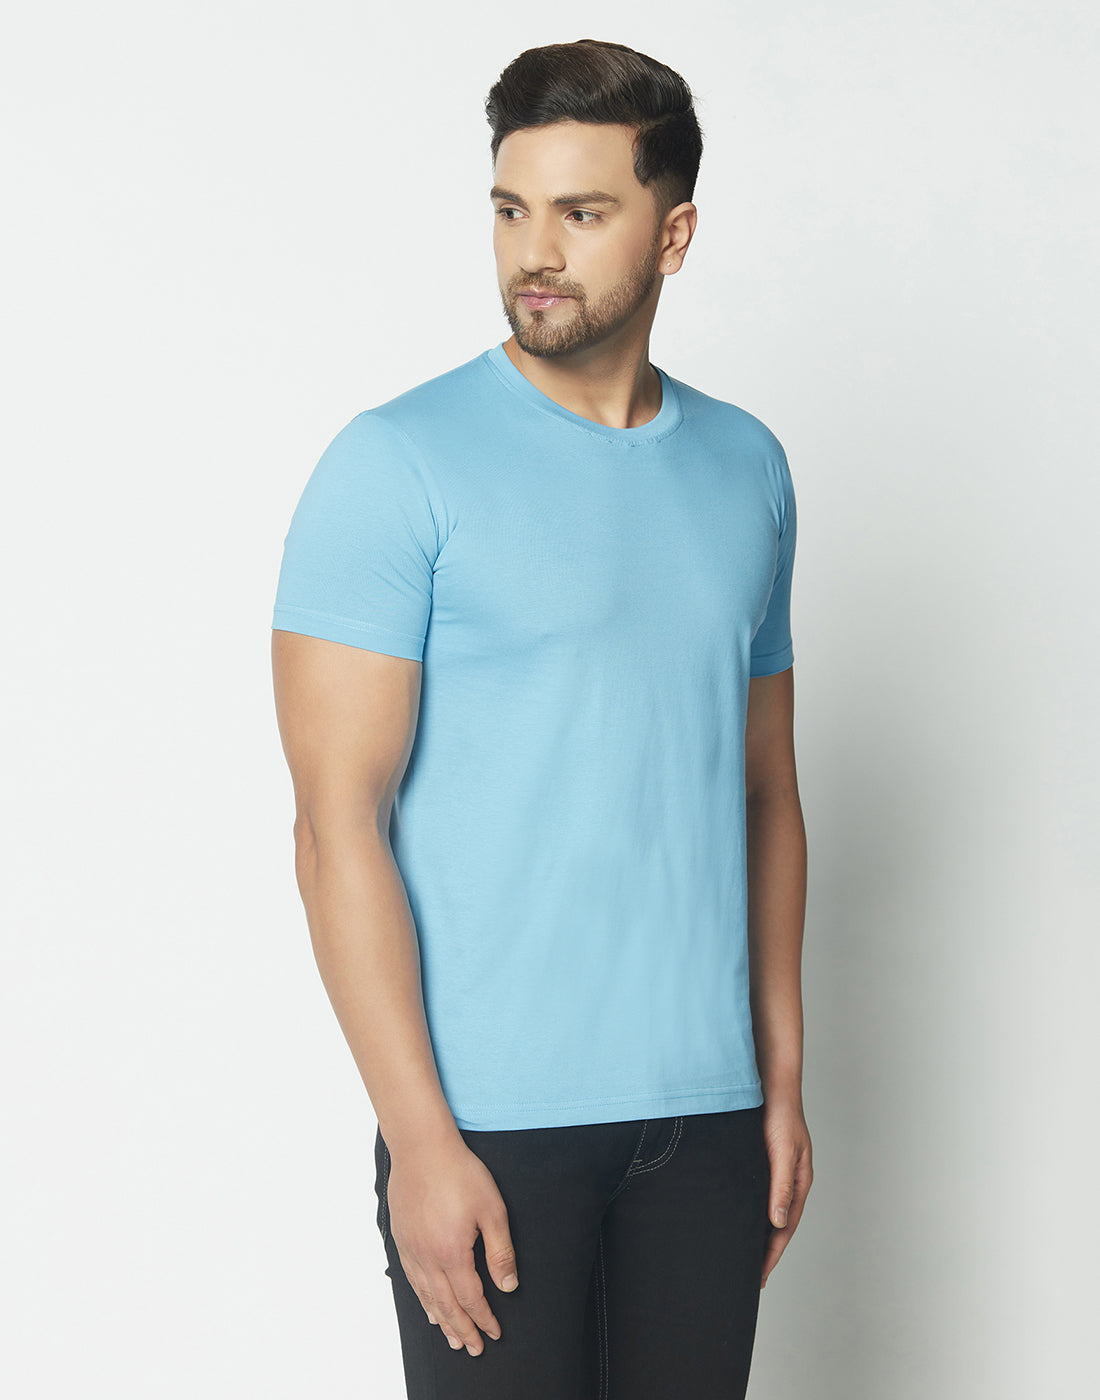 Crew-Neck Aqua Blue T-shirt